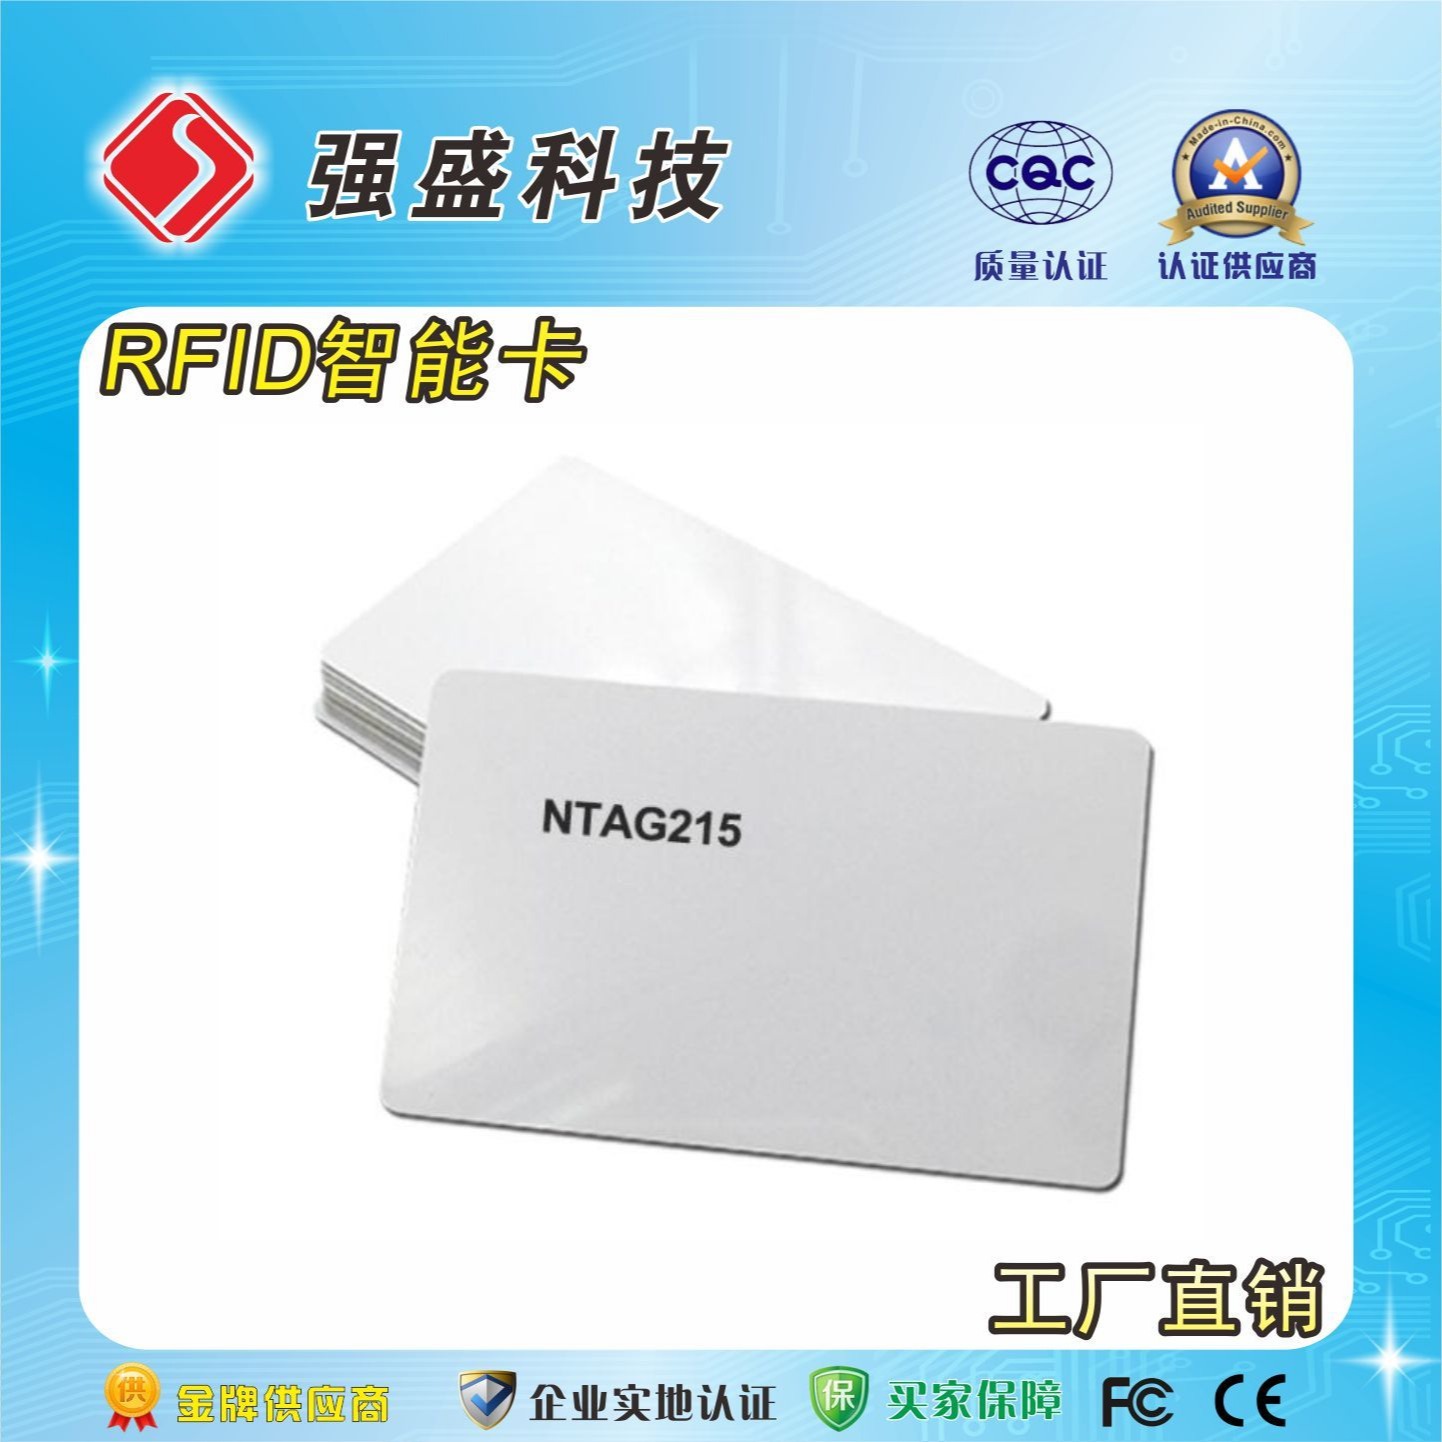 厂家定制NFC智能卡 NTAG215芯片白卡 nfc游戏卡印刷